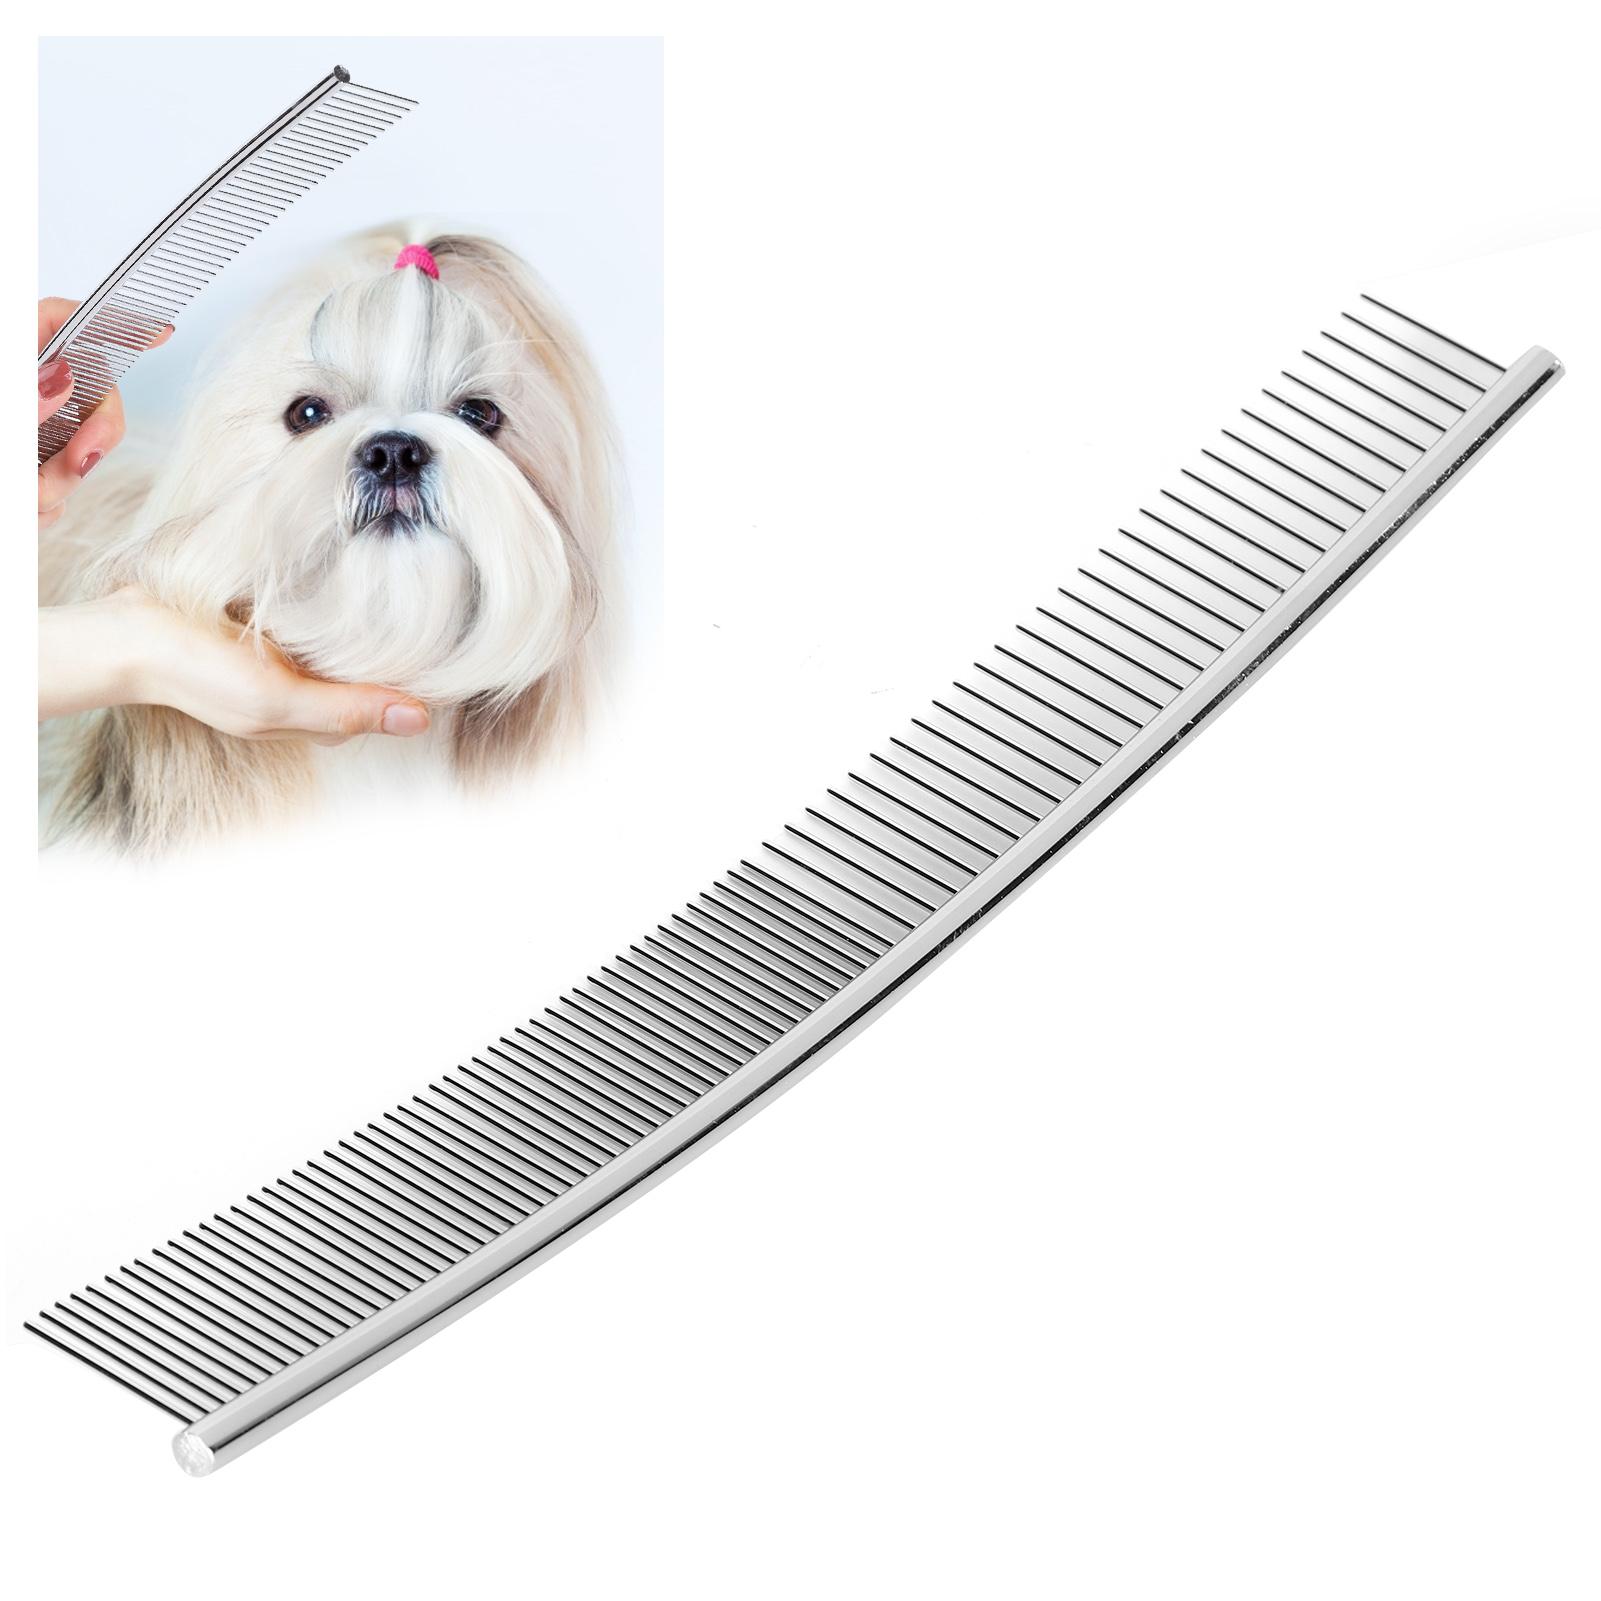 ペットグルーミングコーム ペット犬コーム ペット犬グルーミングノットコーム用の錆びにくい子犬(Half thin and half dense, curved comb)